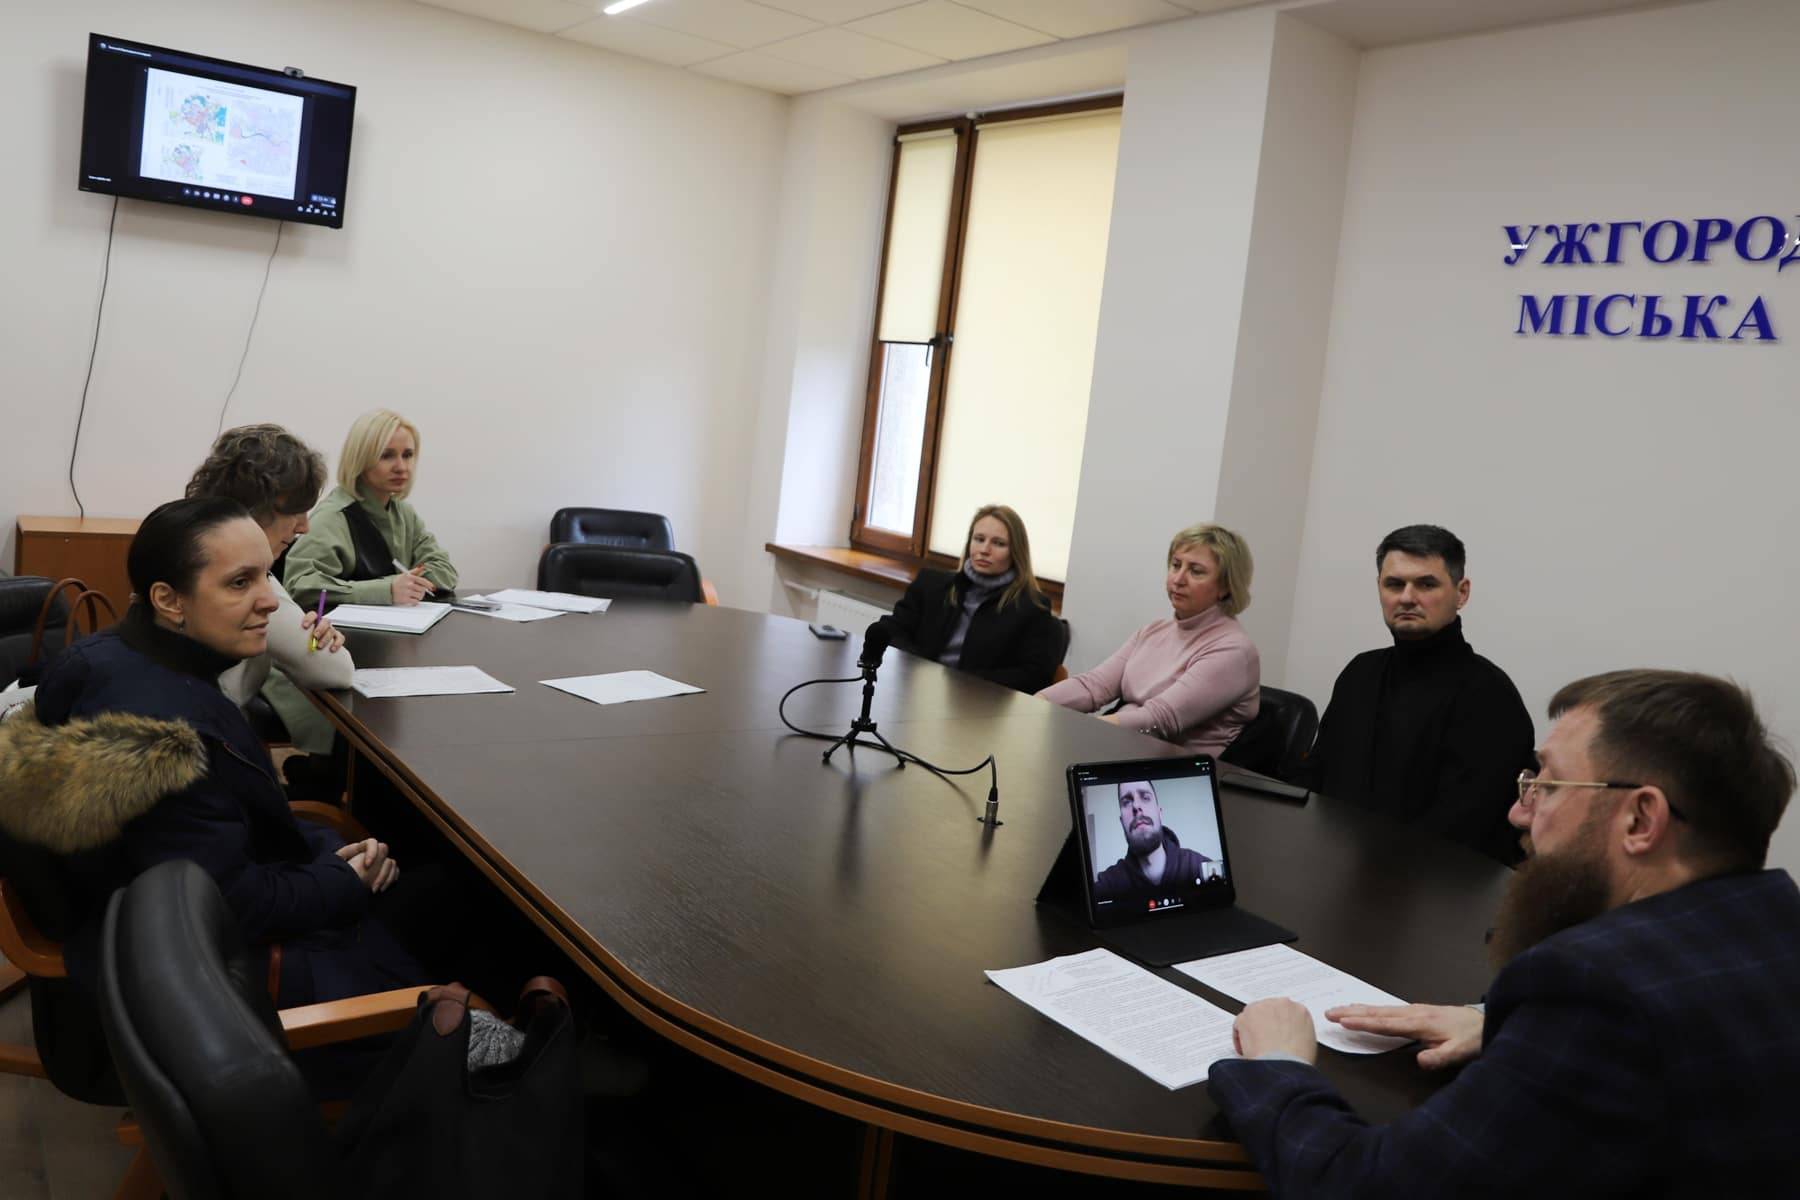 Громадські слухання містобудівної документації – двох детальних планів територій – відбулися в Ужгородській міській раді